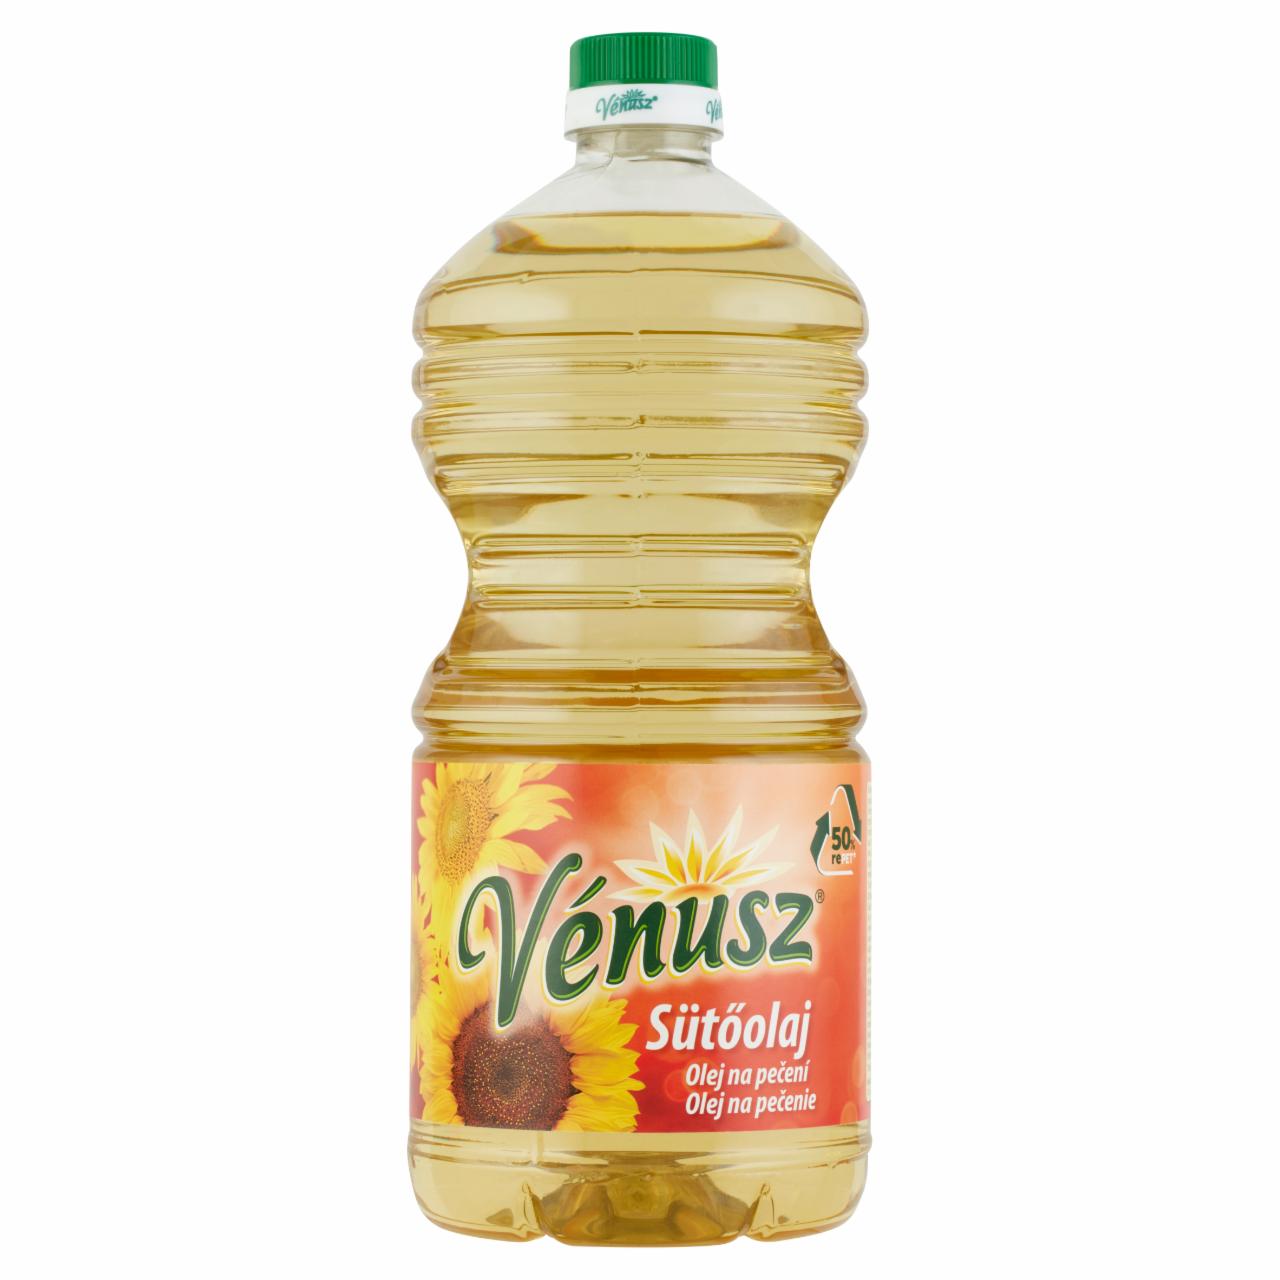 Képek - Vénusz sütőolaj 2 l